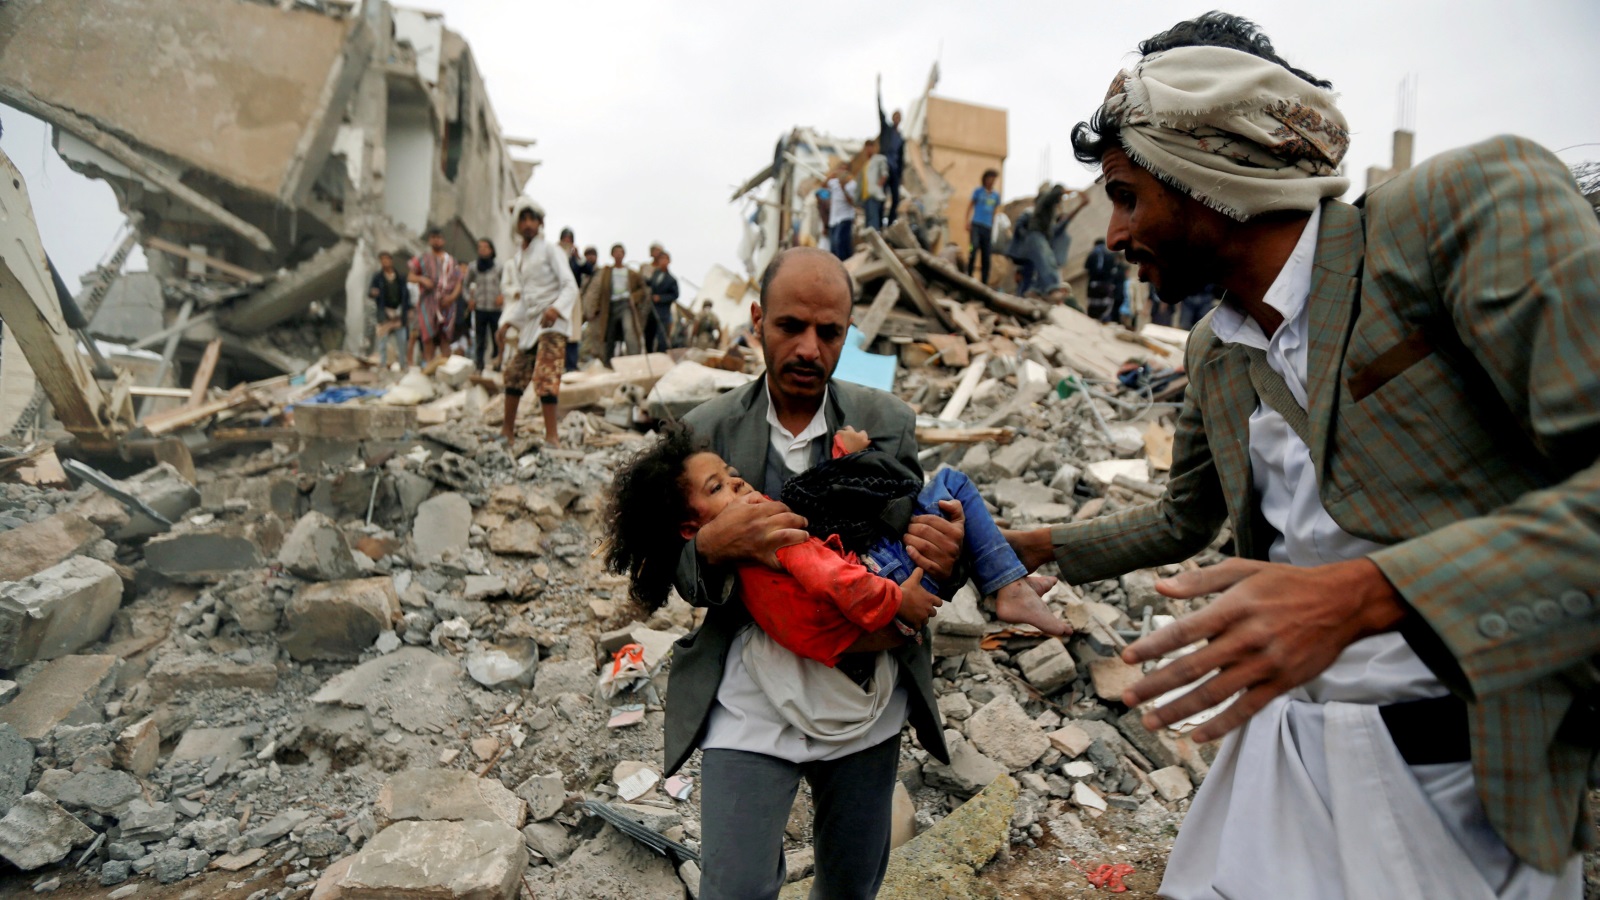 الطفلة اليمنية بثينة الناجية بعد تعرض منزل أسرتها بصنعاء للقصف يوم 26 أغسطس/آب 2017 ومقتل عدد من أفراد أسرتها (رويترز)